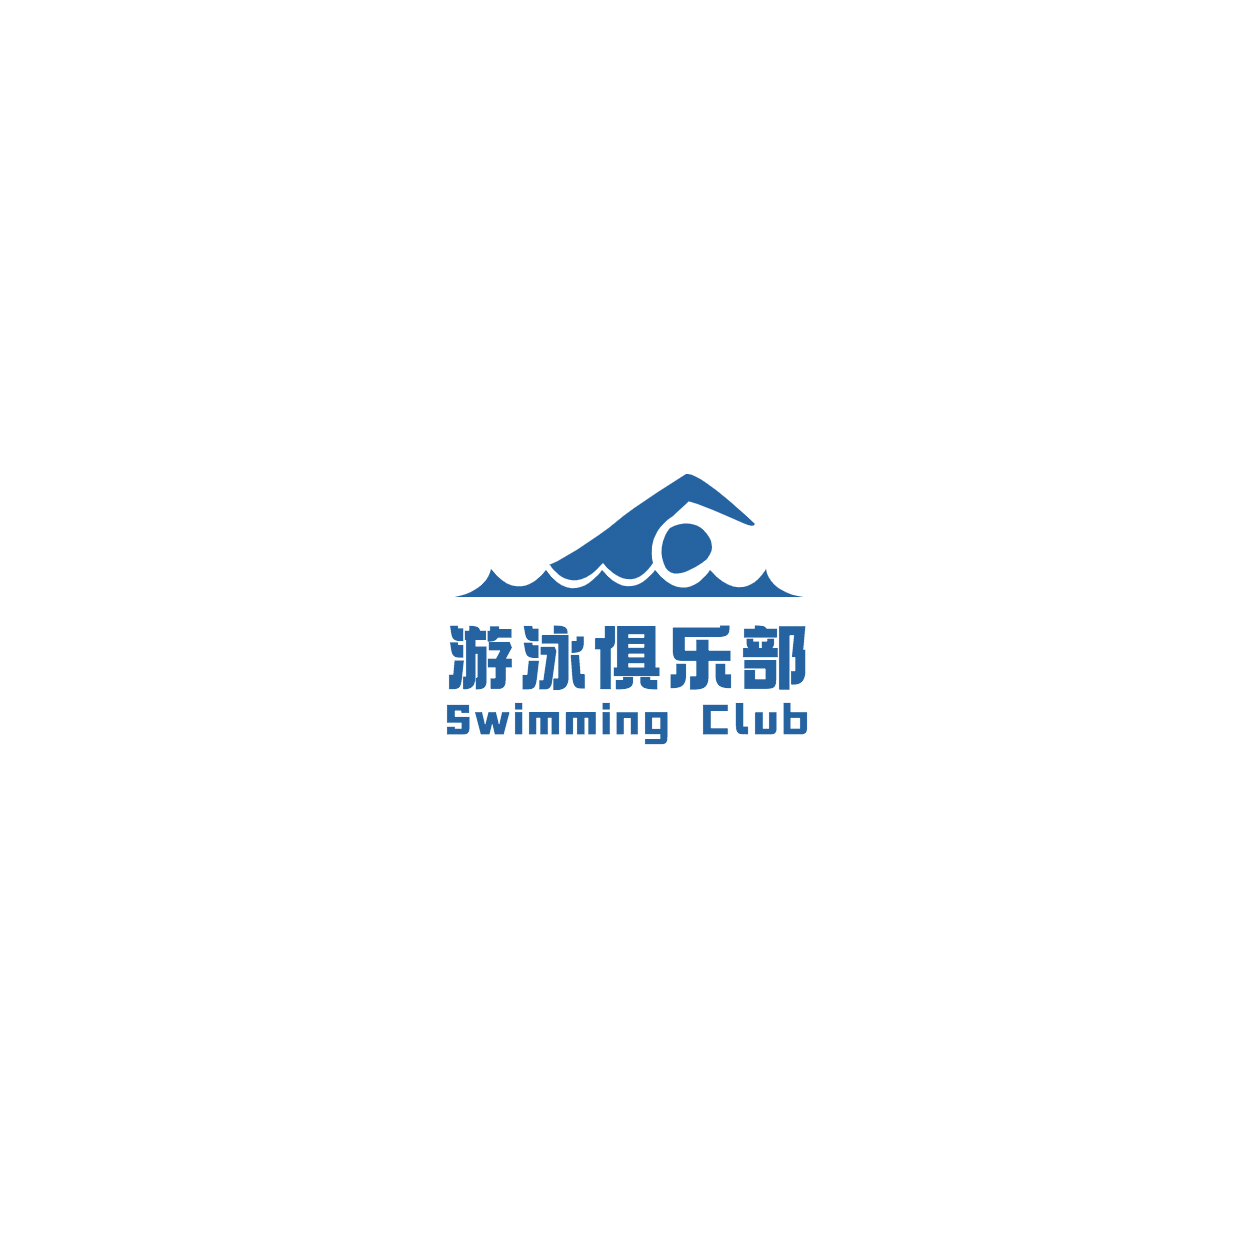 游泳俱乐培训班头像logo预览效果